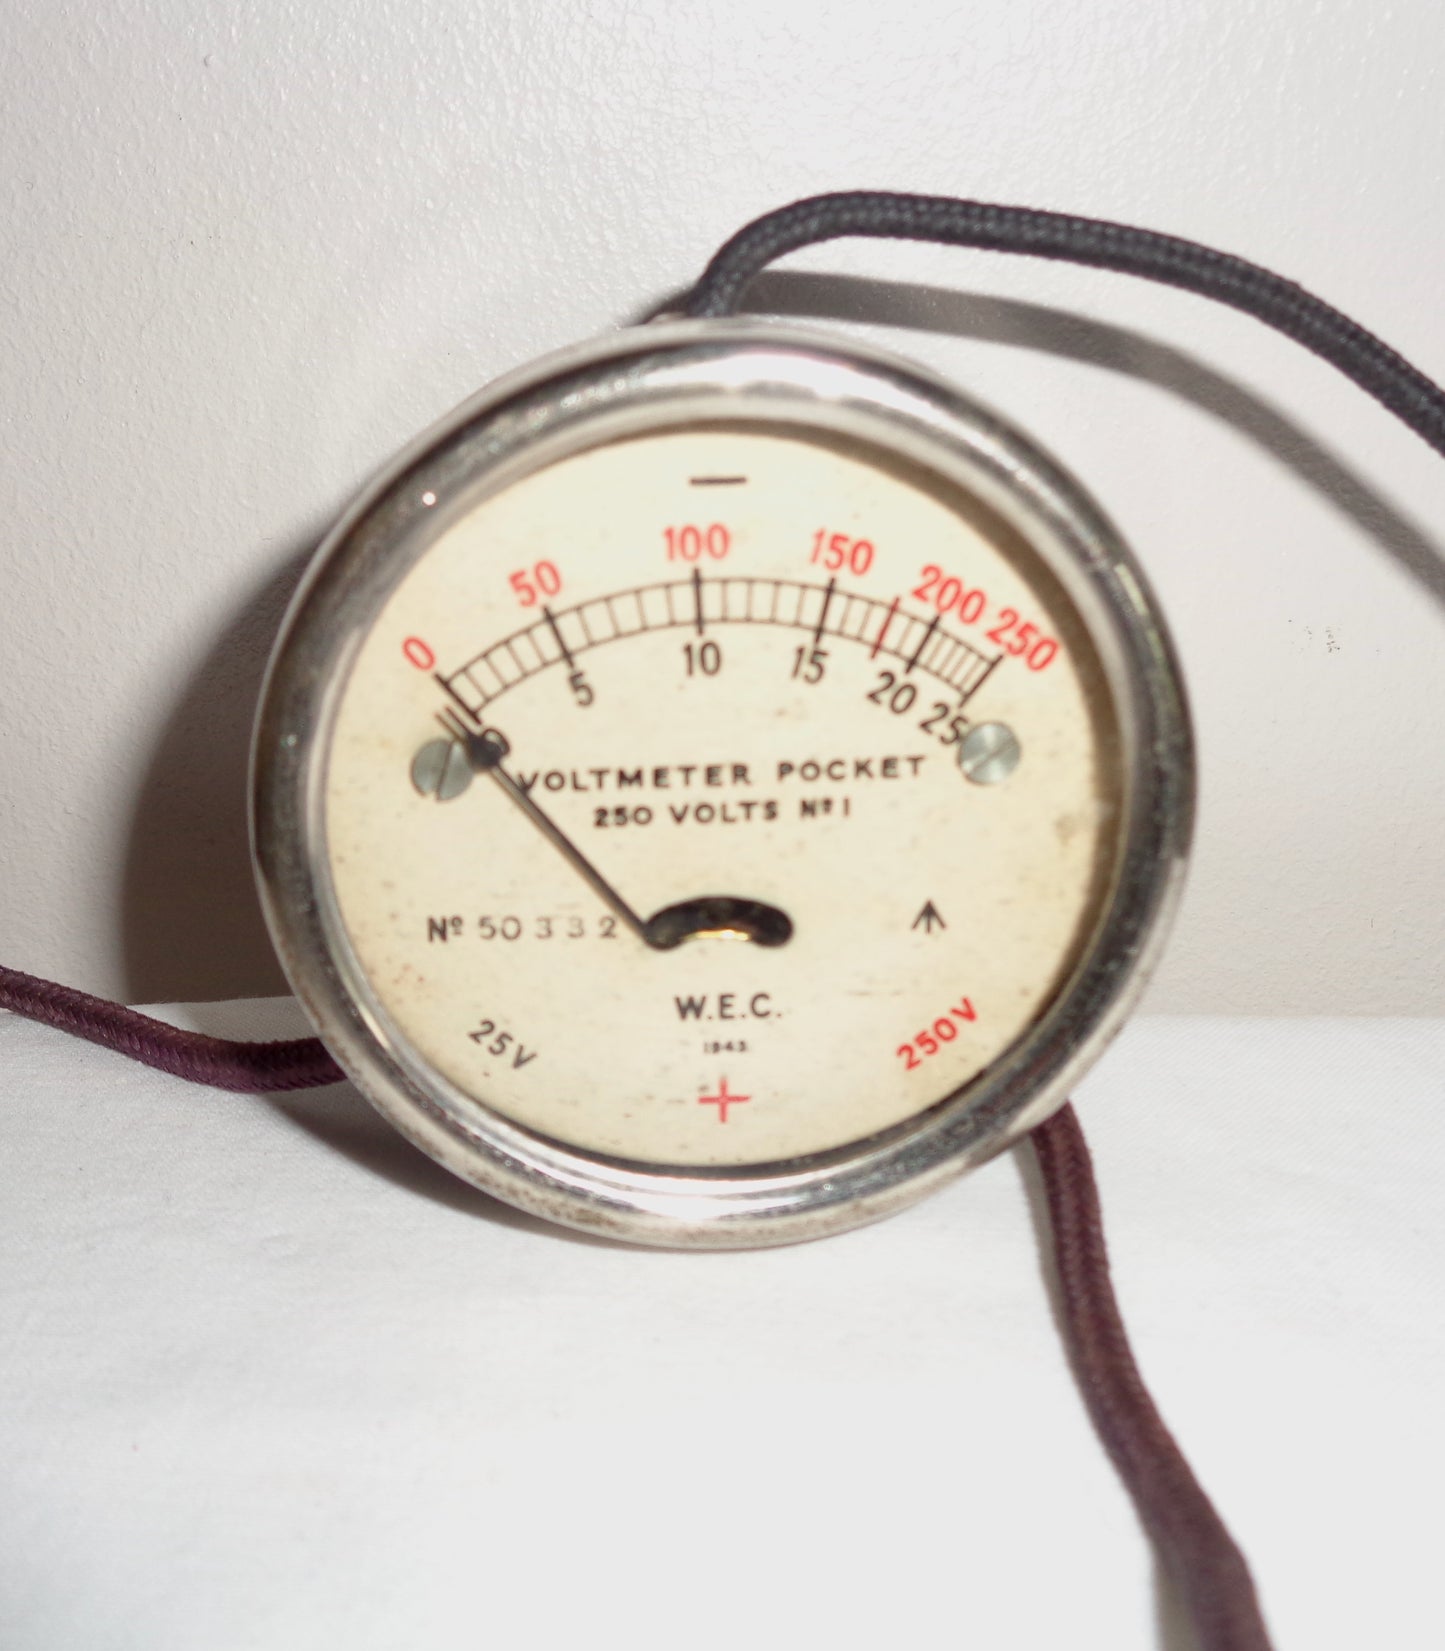 1943 WW2 WEC Pocket Volt meter No.1 250 Volts